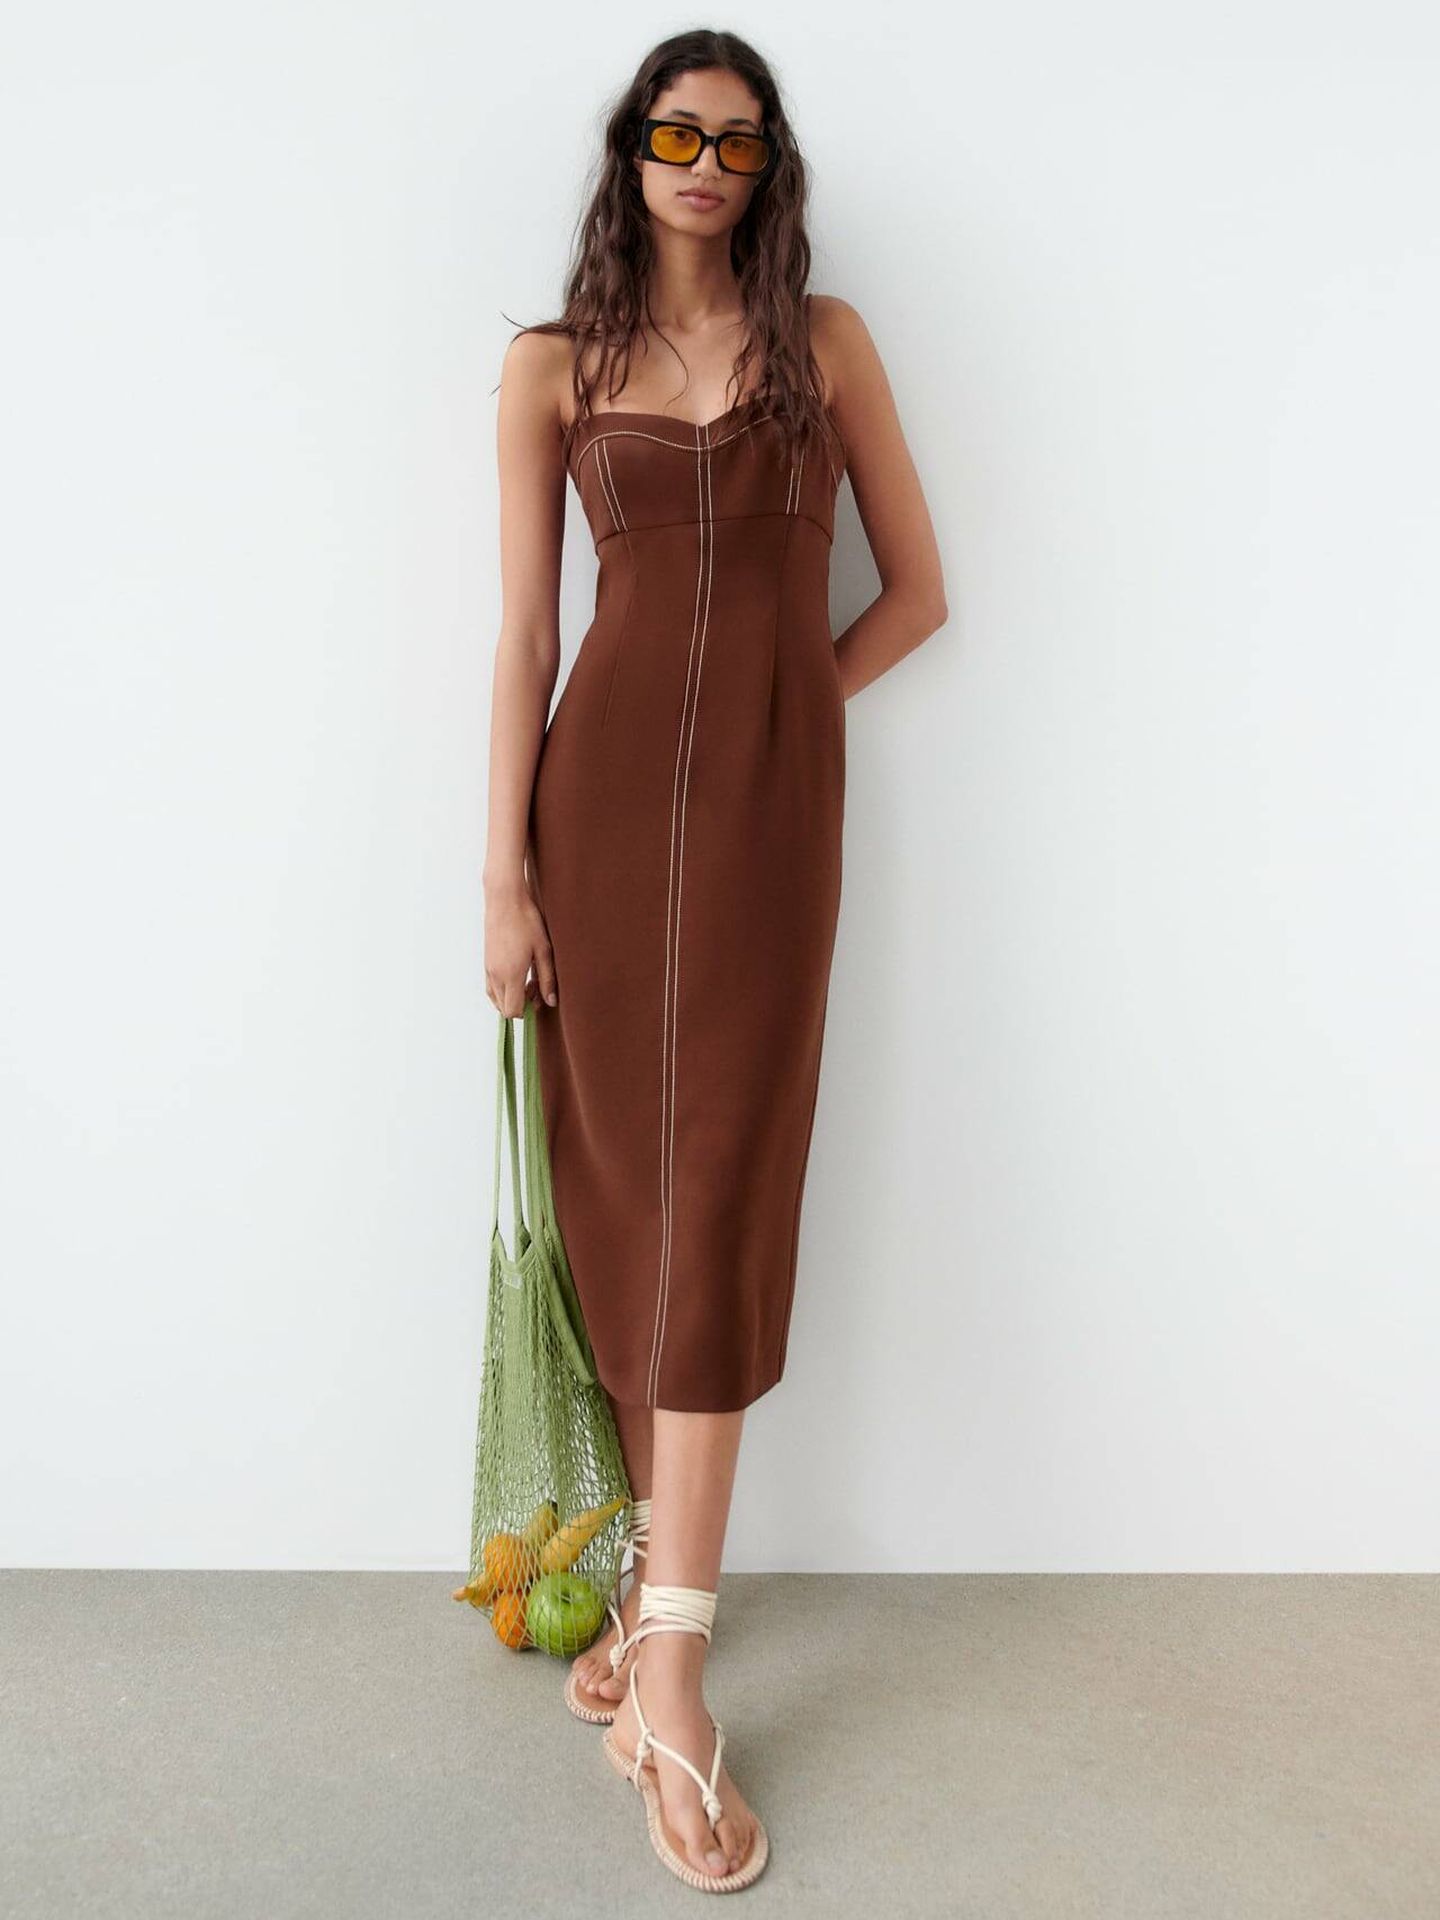 Hablemos del nuevo vestido marrón de Zara su capacidad para hacerte